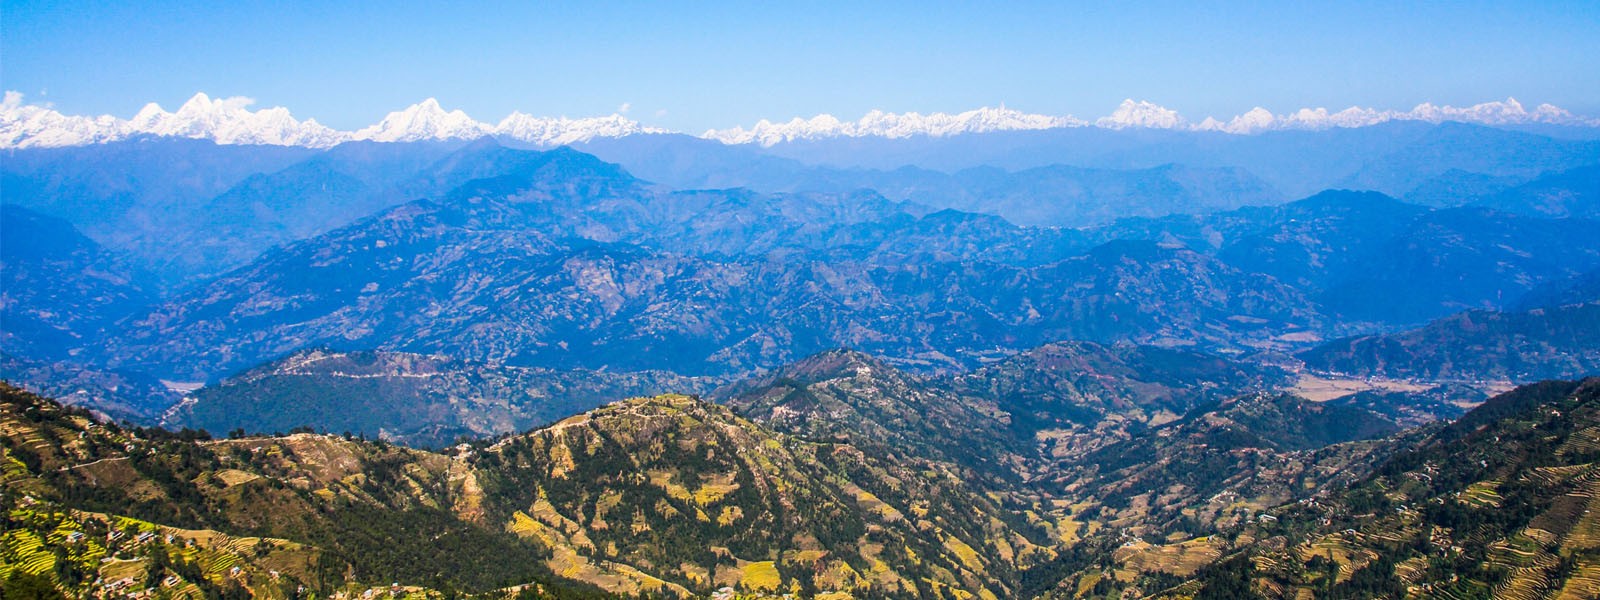 HImalayan Views, Nepal